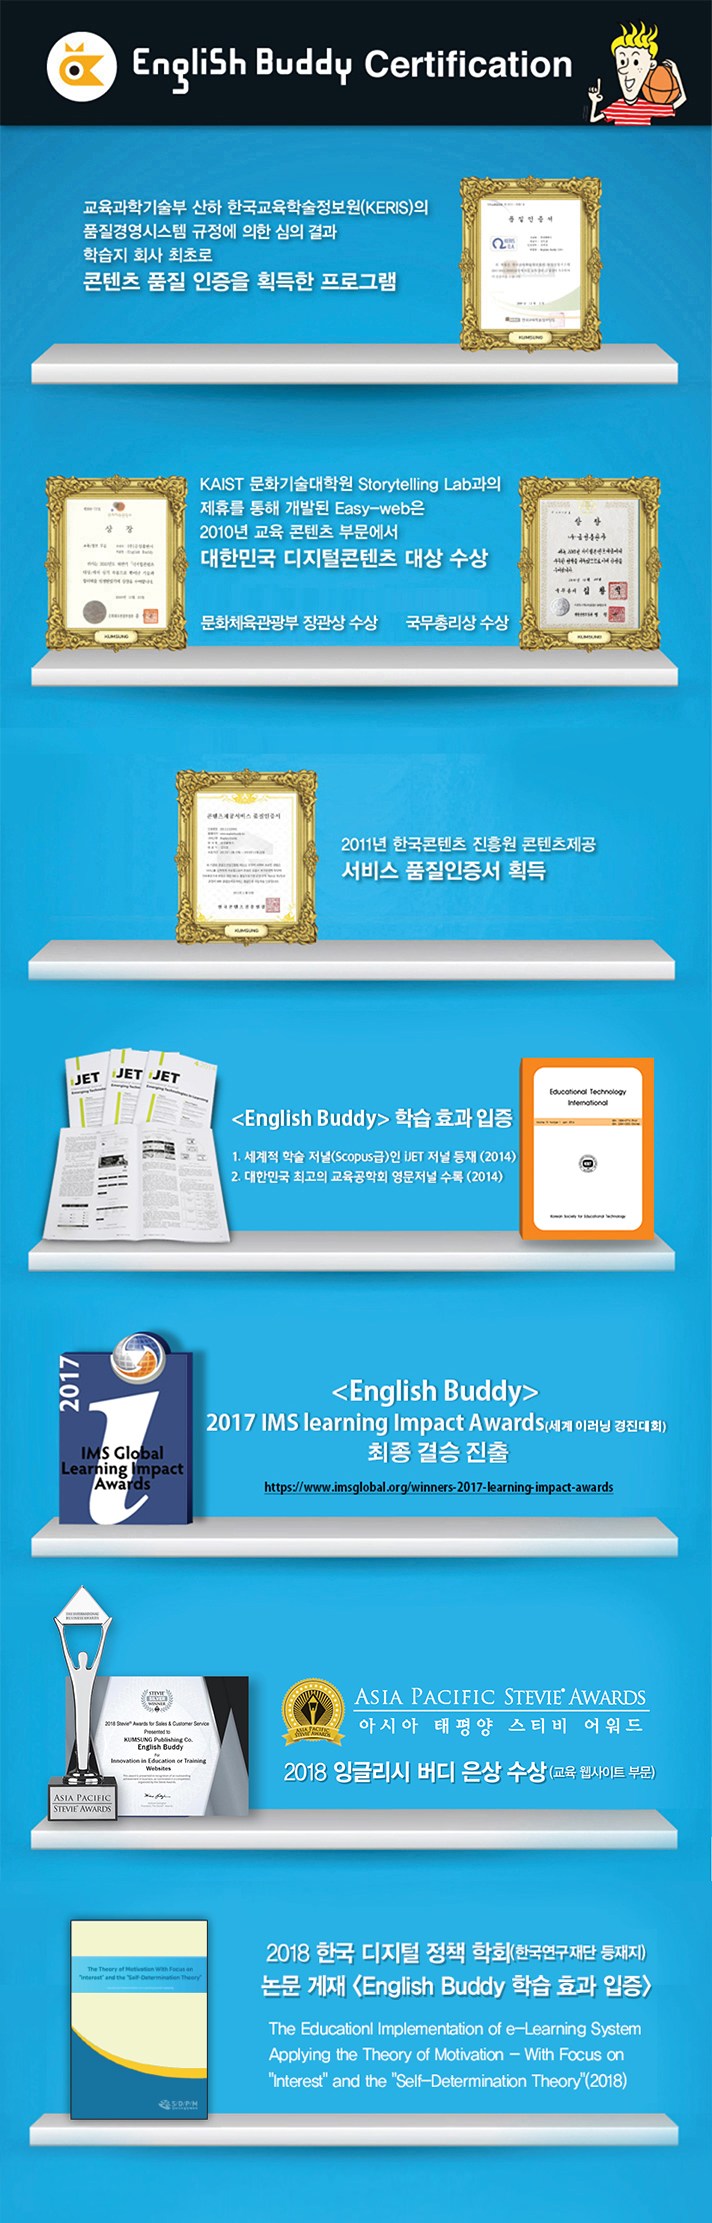 English Buddy Certification